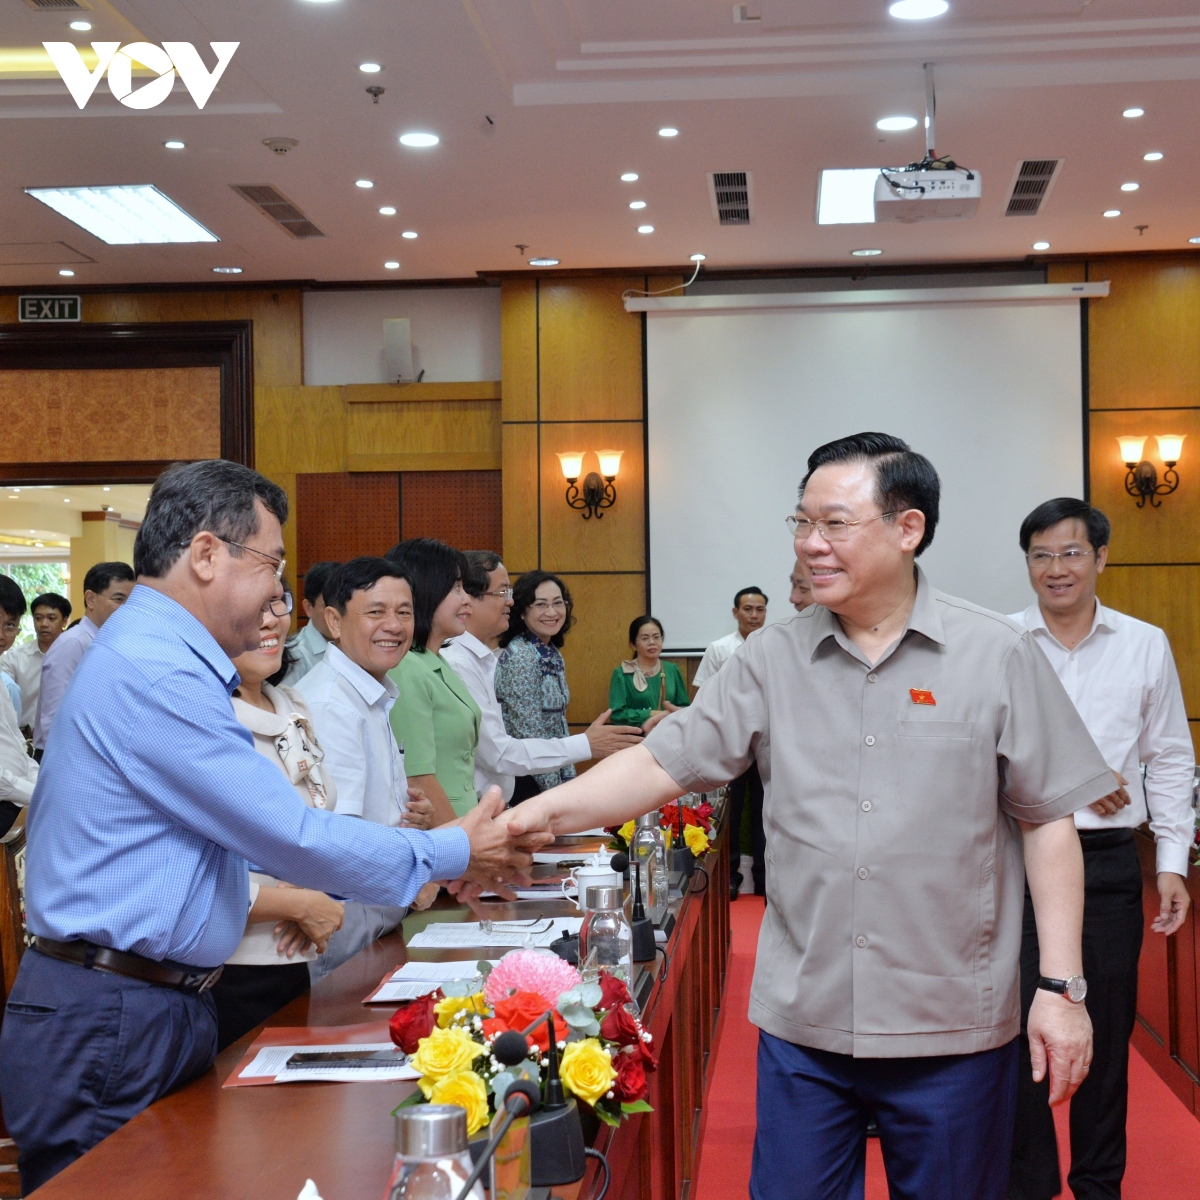 Chủ tịch Quốc hội làm việc tại Tây Ninh, thắp hương tưởng nhớ liệt sĩ Đồi 82